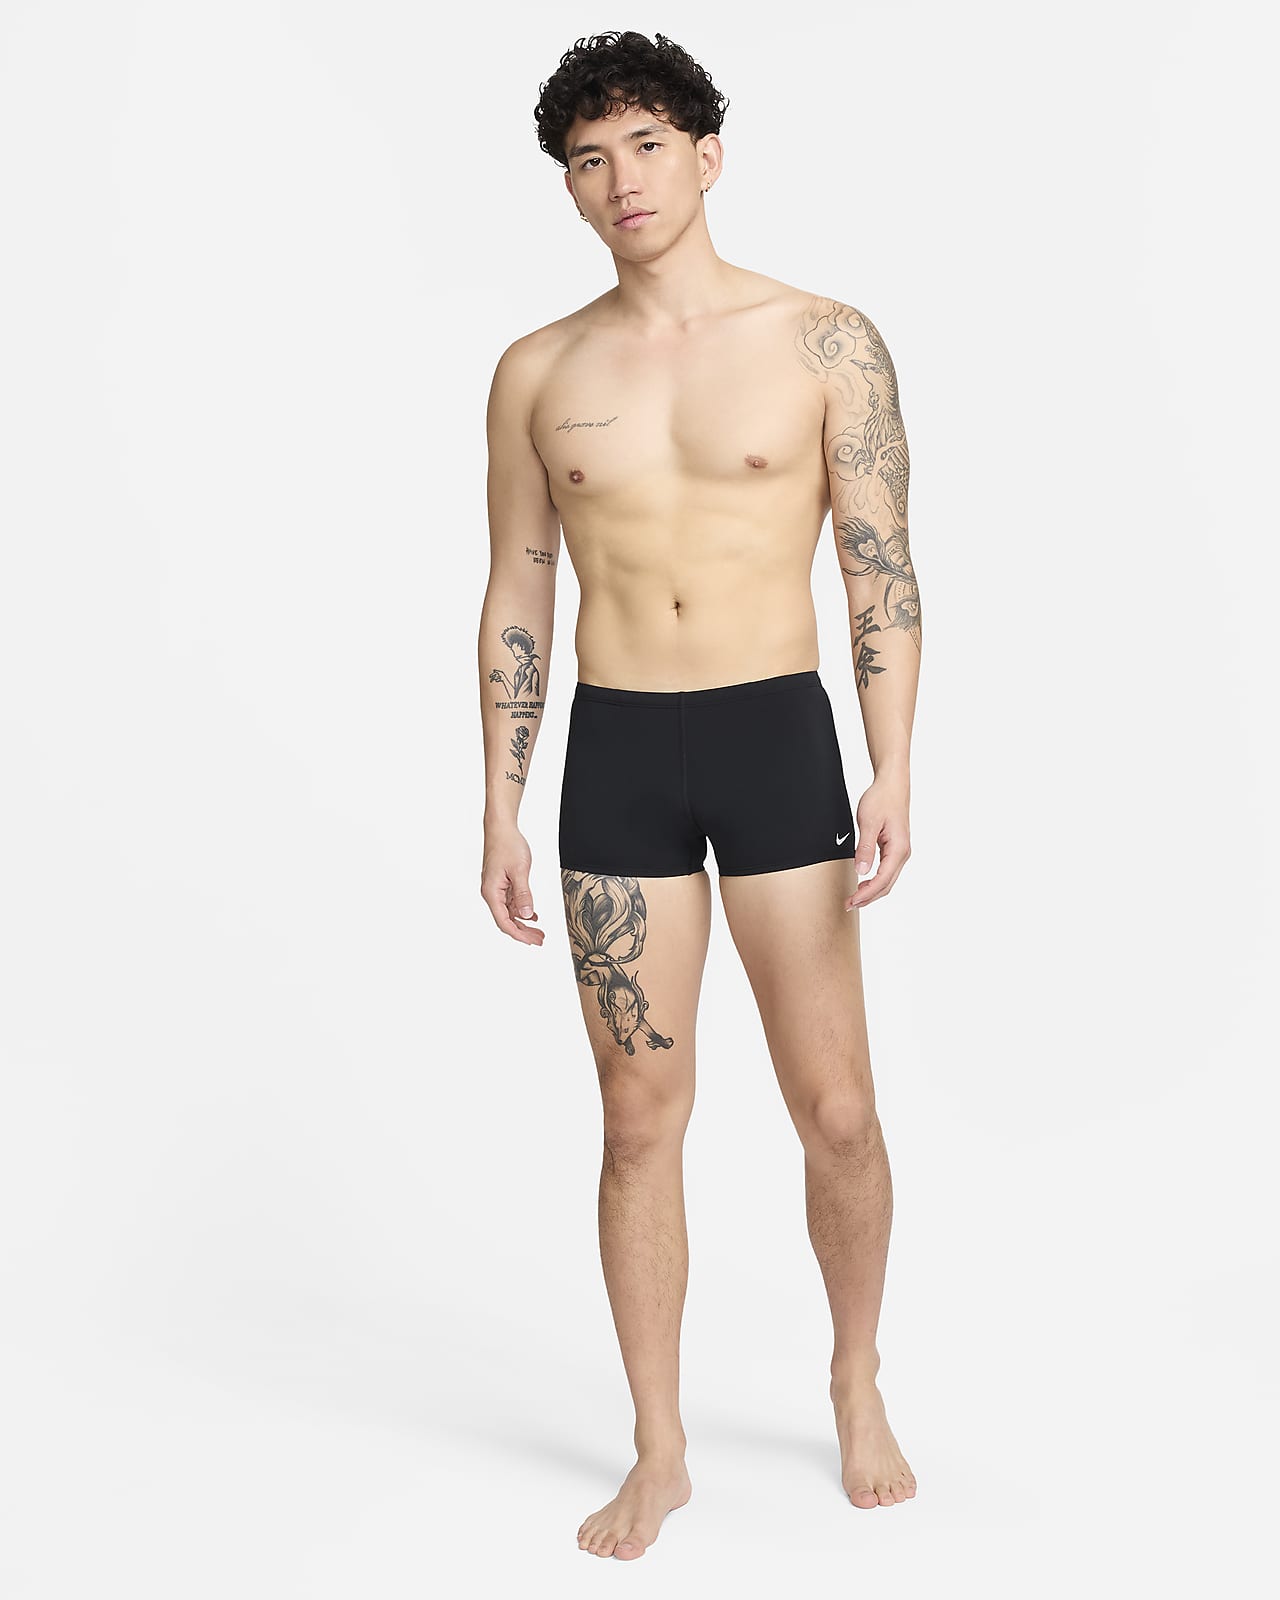 Nike Swim Men's Nylon Core Solid Brief Black Size 26